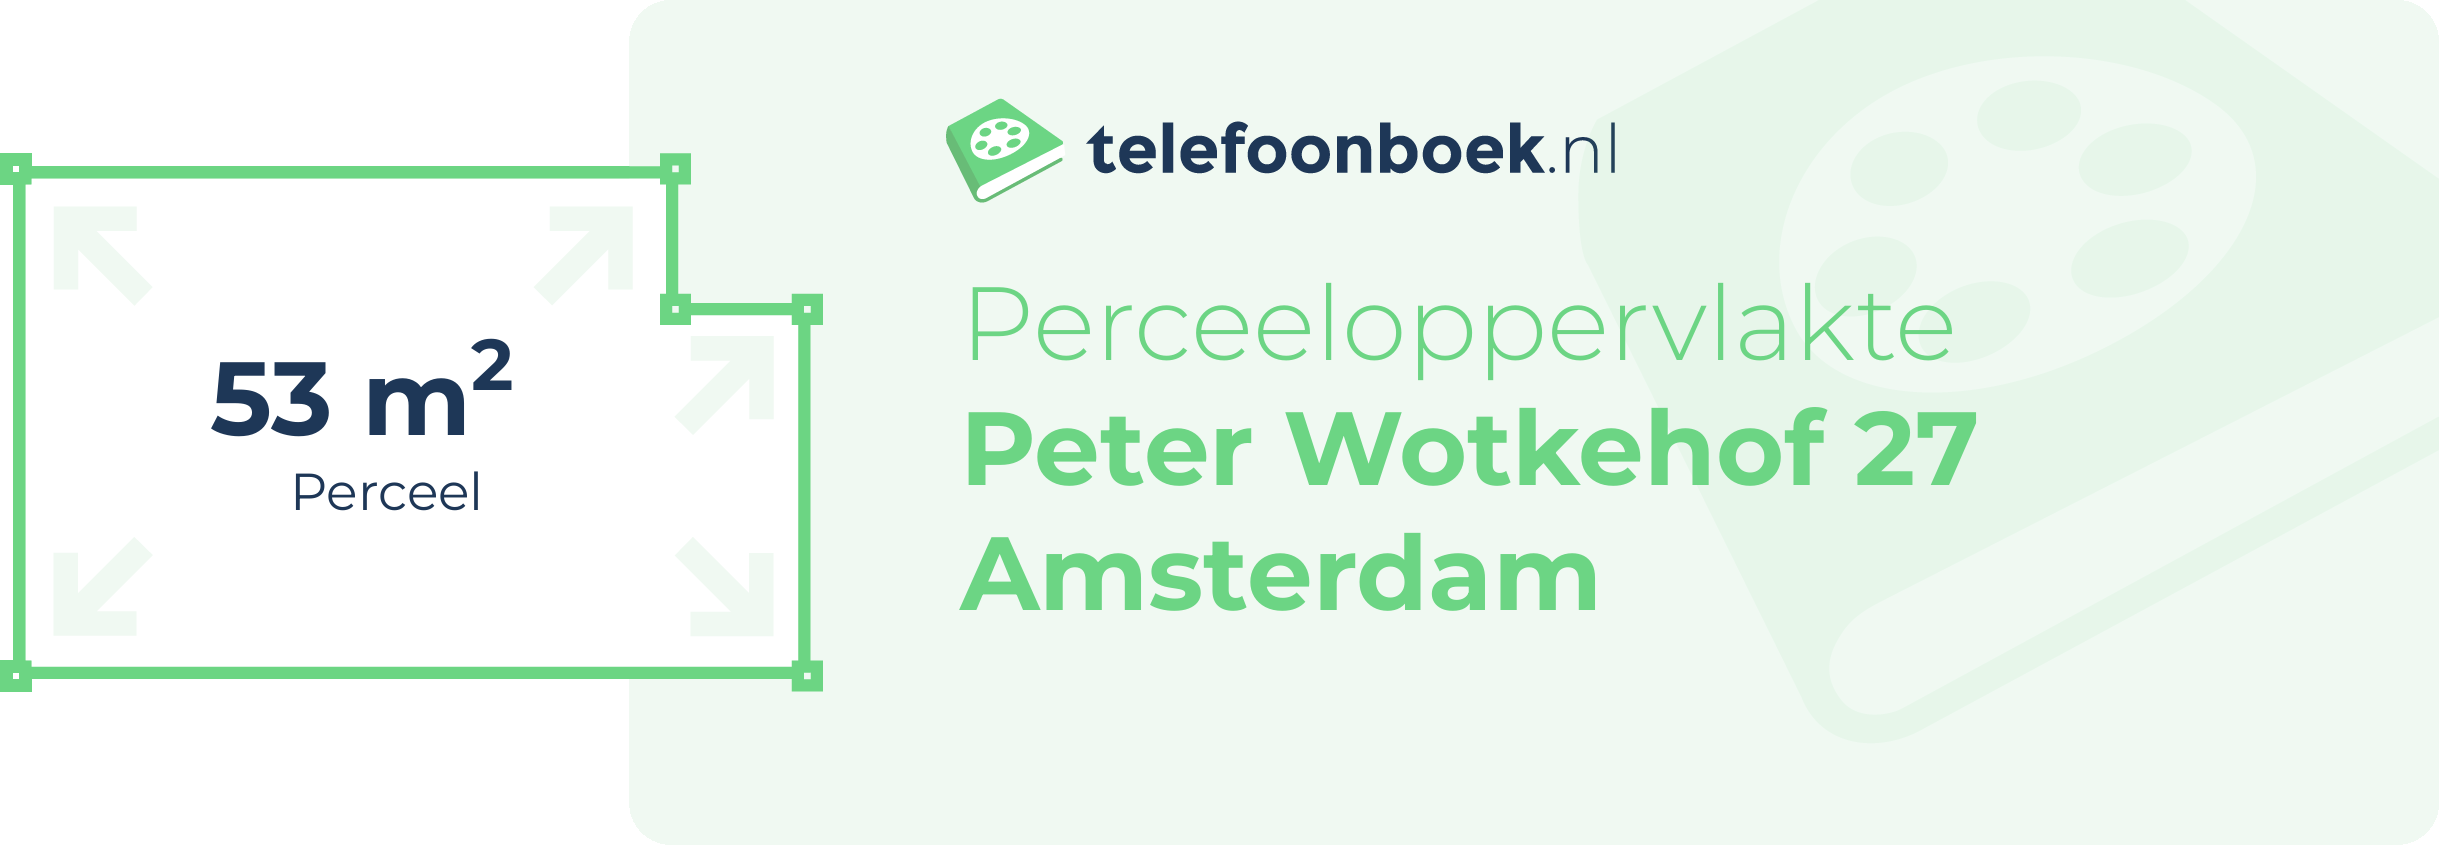 Perceeloppervlakte Peter Wotkehof 27 Amsterdam